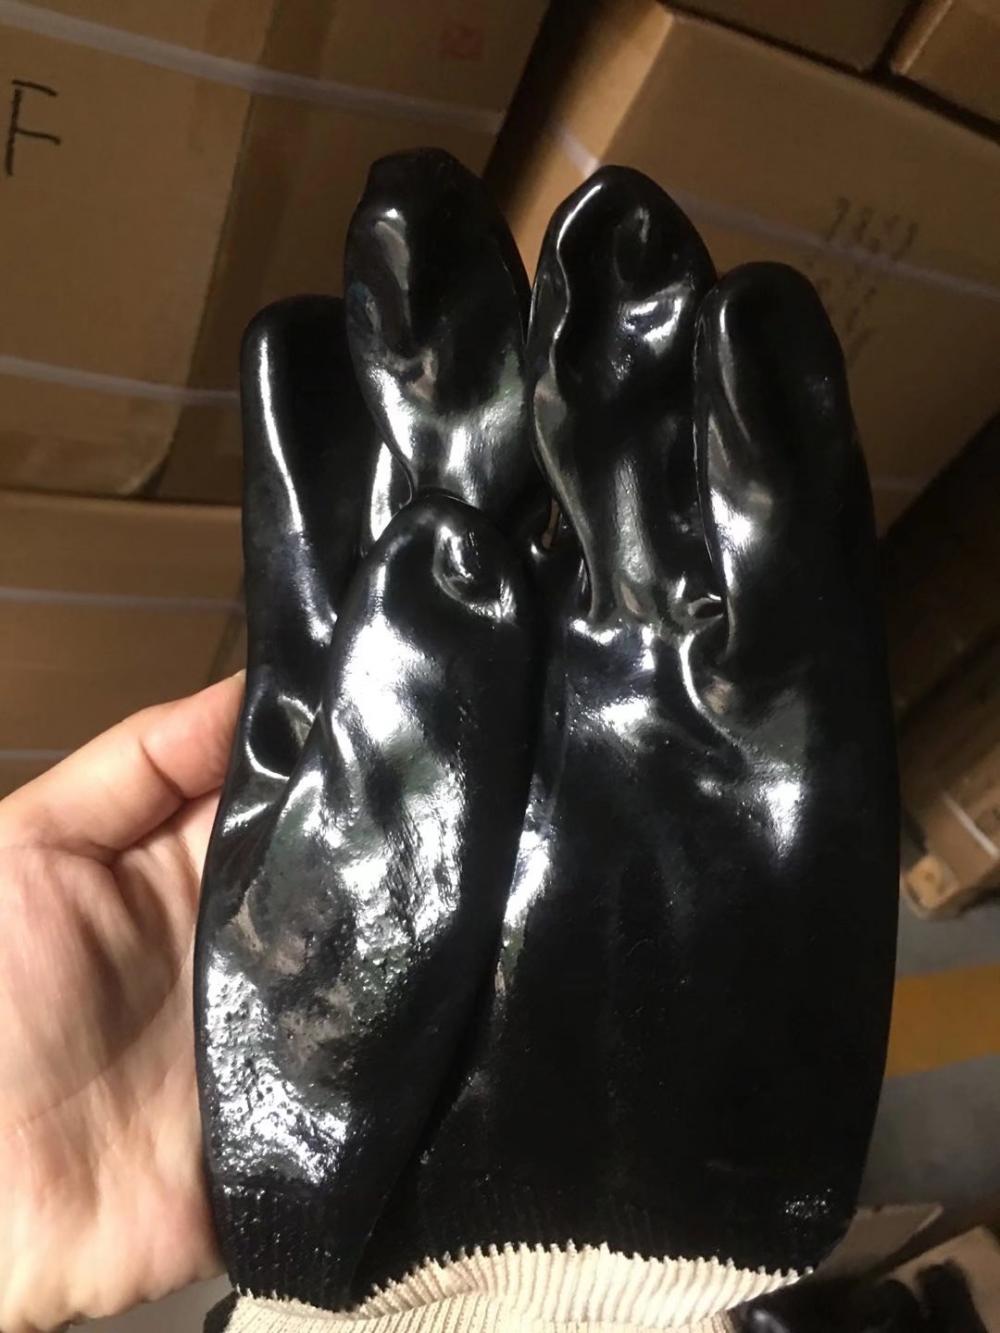 Black PVC Baumwollverzögerung mit glatten Handschuhen